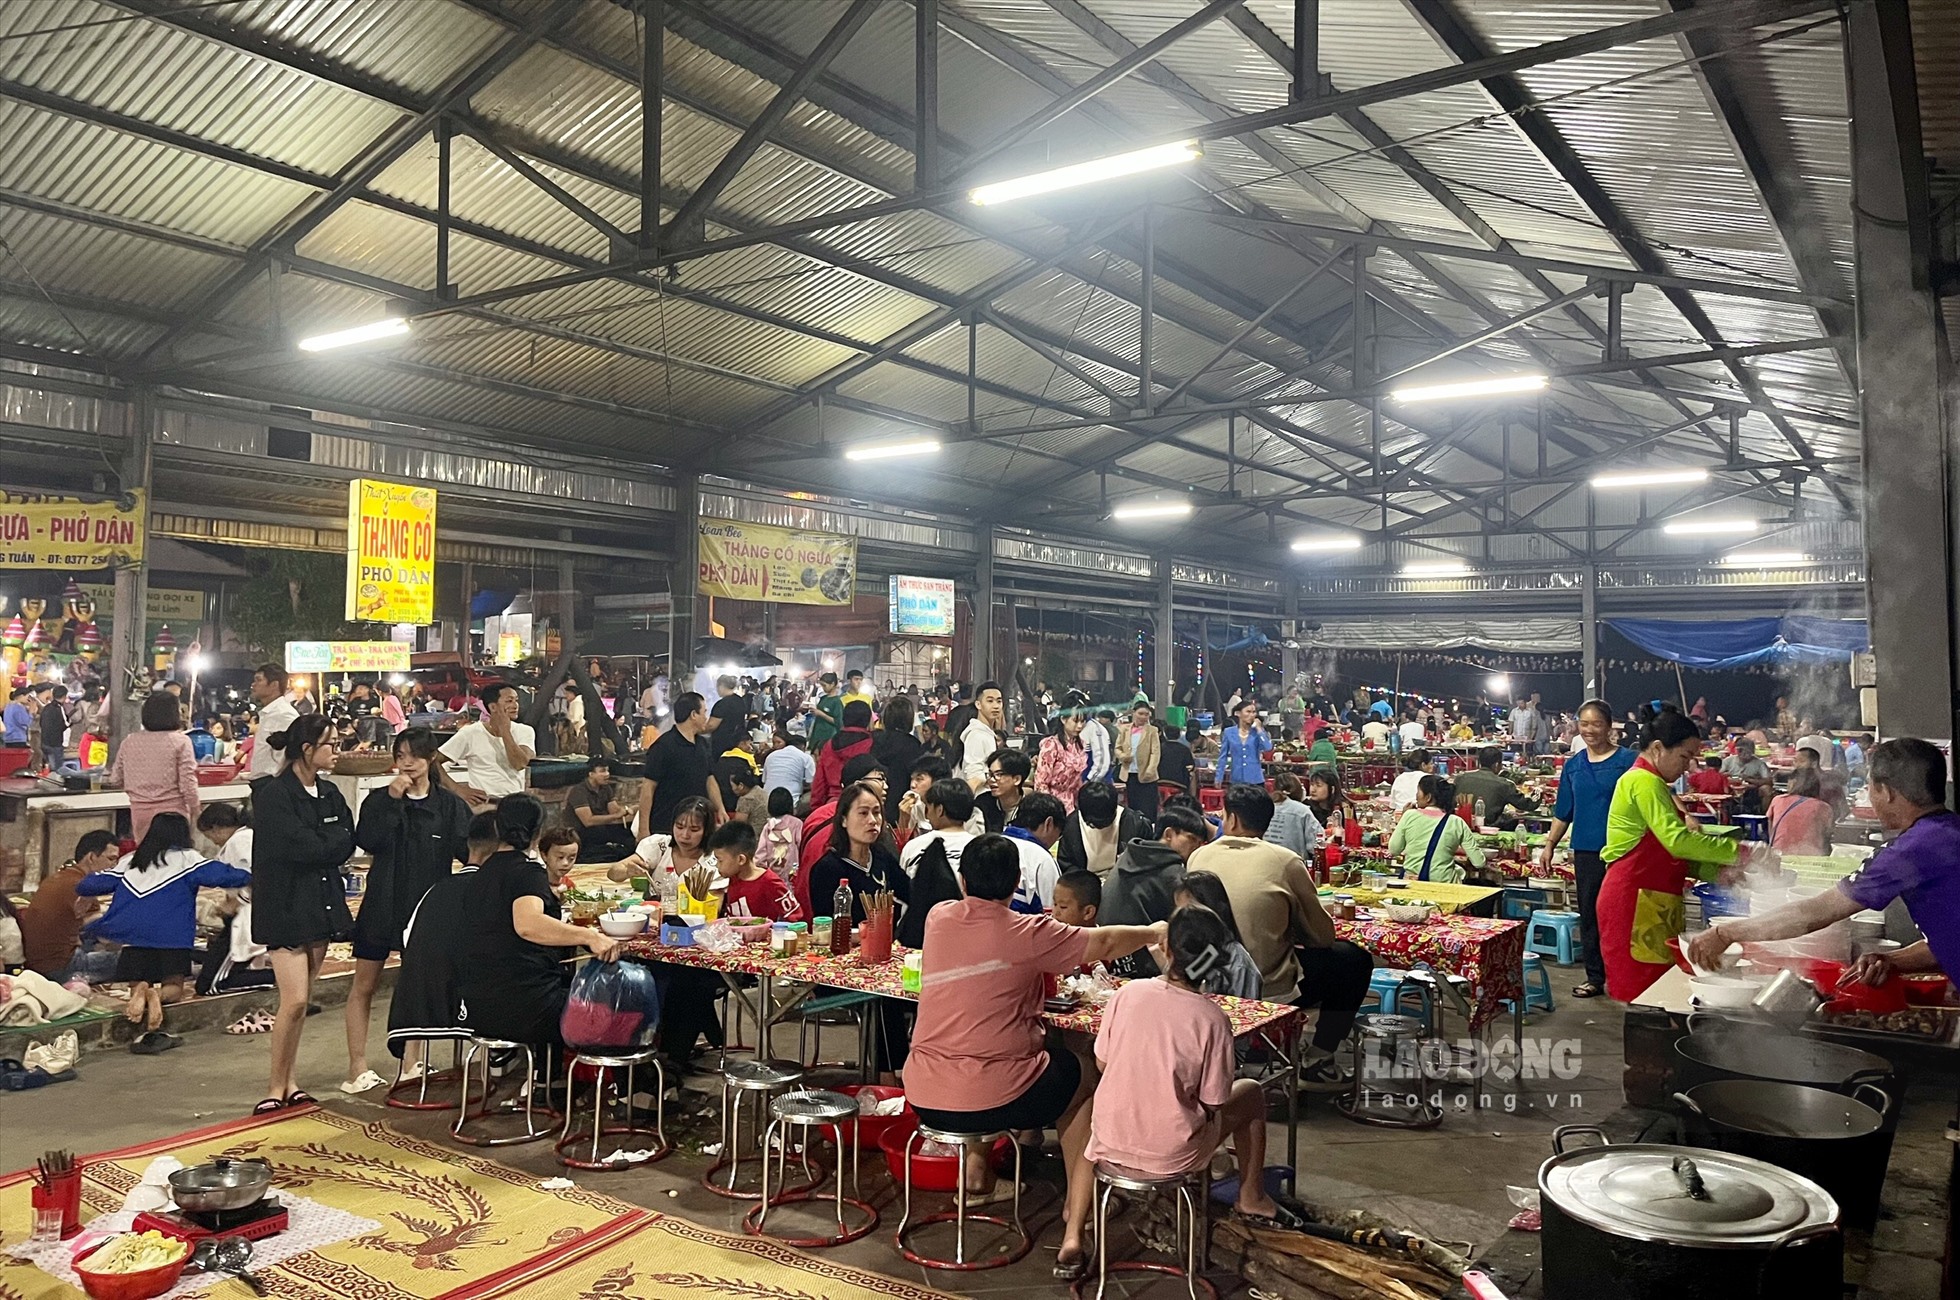 Chợ chủ yếu bán các món ăn như thắng cố, bánh phở dân tộc Giáy, đồ nướng, nước giải khát và các trò chơi sẵn sàng phục vụ nhu cầu khách đến thăm chợ.